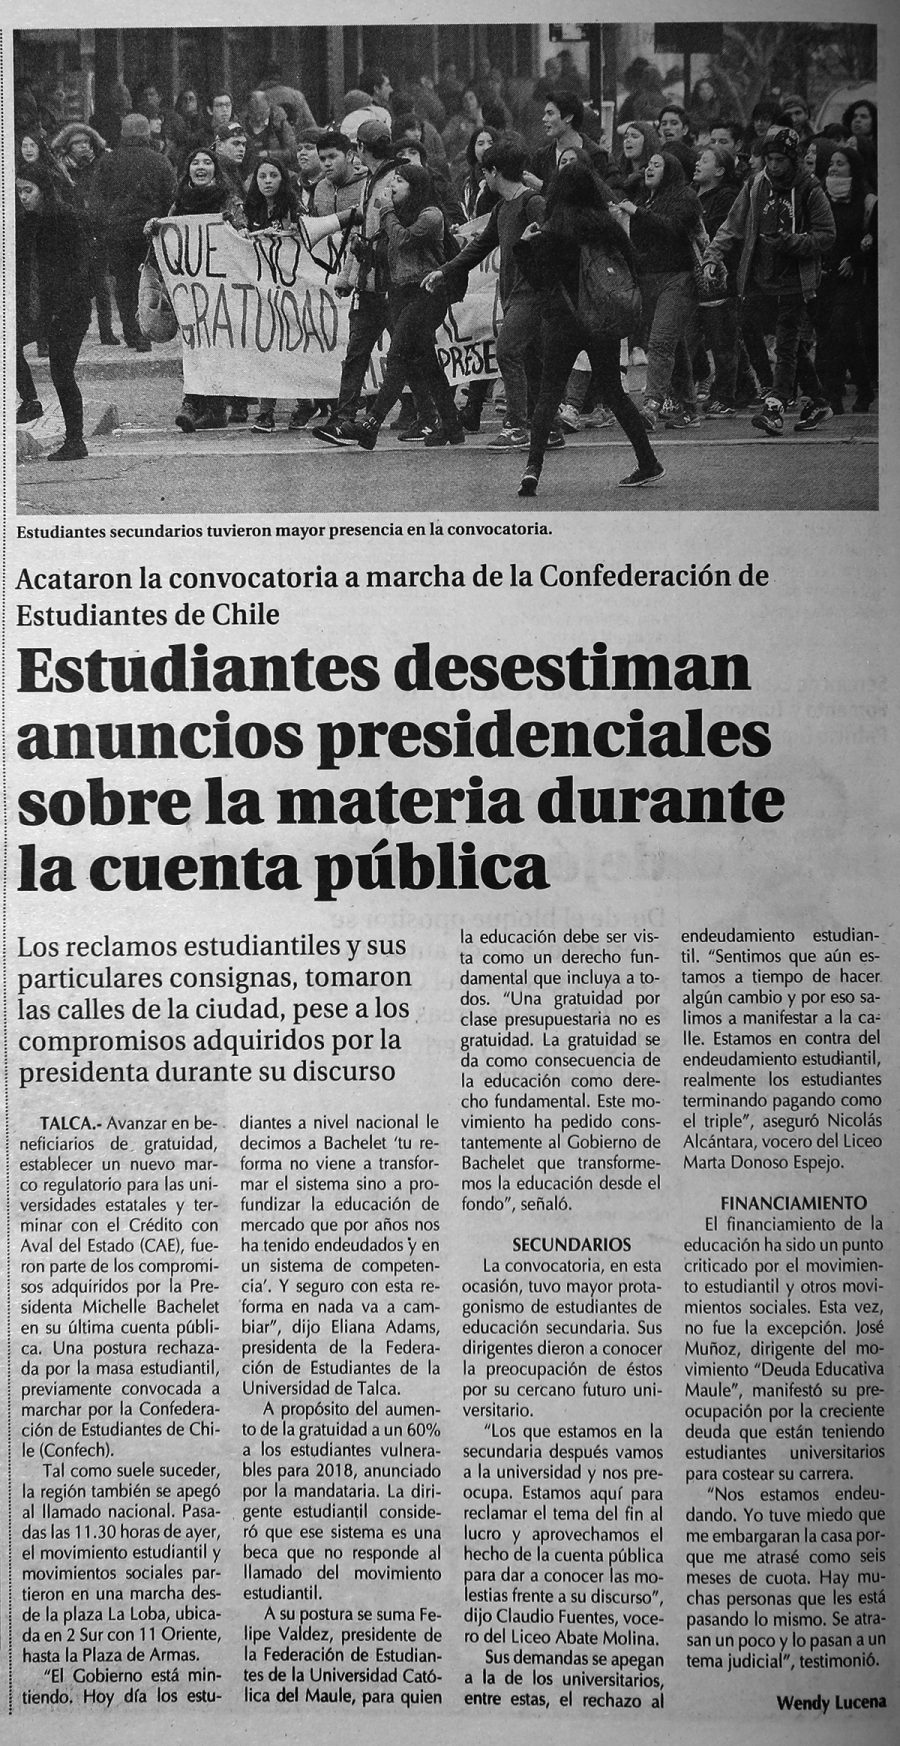 02 de junio en Diario El Centro: “Estudiantes desestiman anuncios presidenciales sobre la materia en cuenta pública”